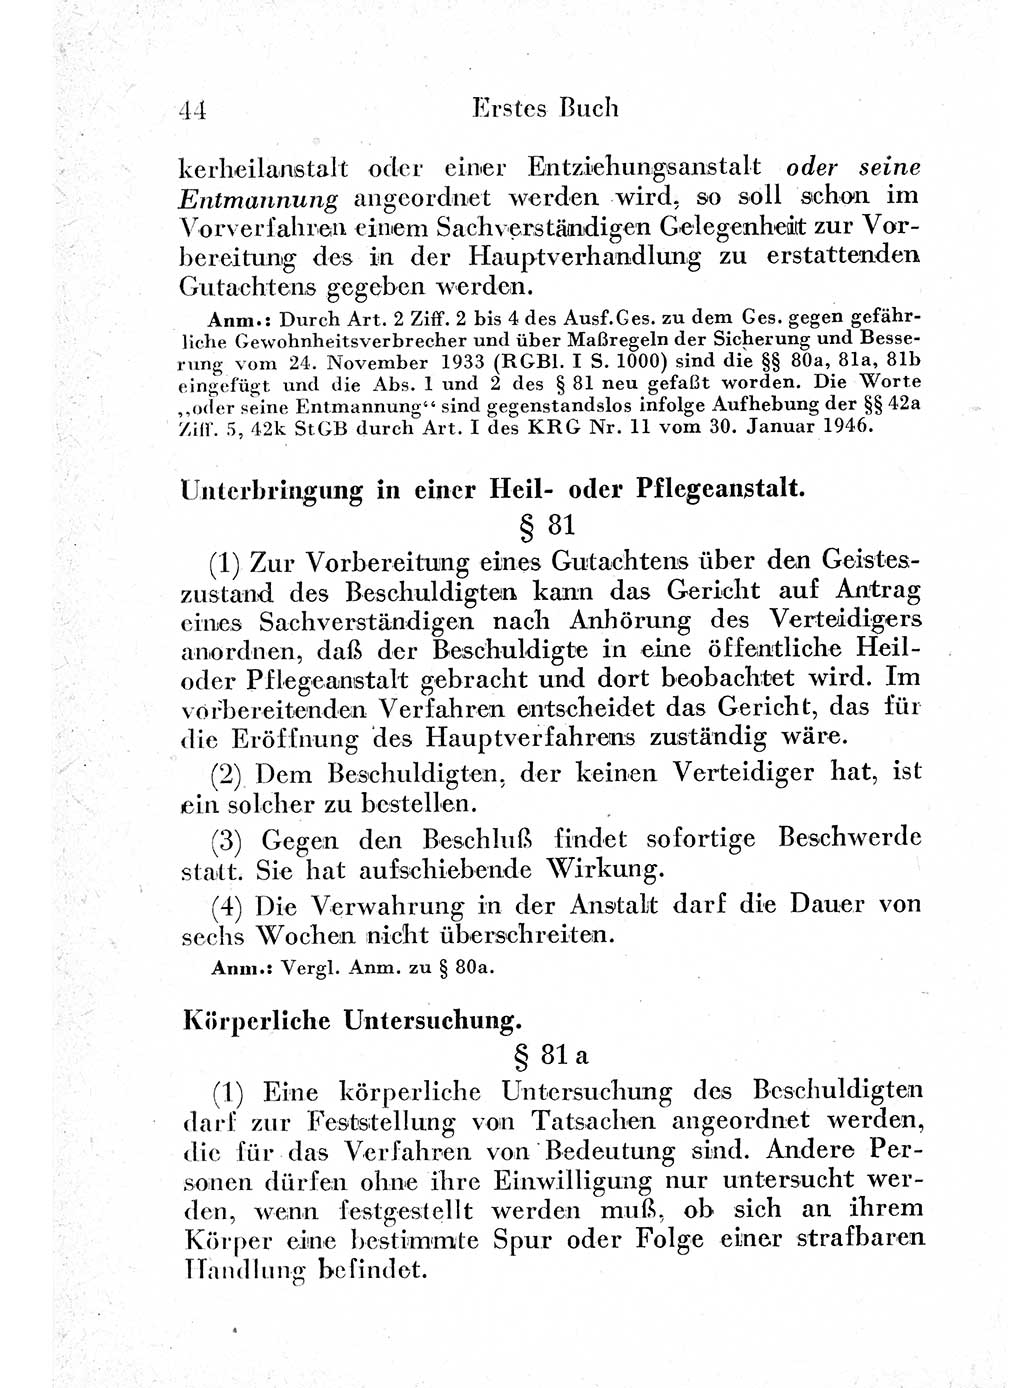 Strafprozeßordnung (StPO), Gerichtsverfassungsgesetz (GVG) und zahlreiche Nebengesetze der sowjetischen Besatzungszone (SBZ) in Deutschland 1949, Seite 44 (StPO GVG Ges. SBZ Dtl. 1949, S. 44)